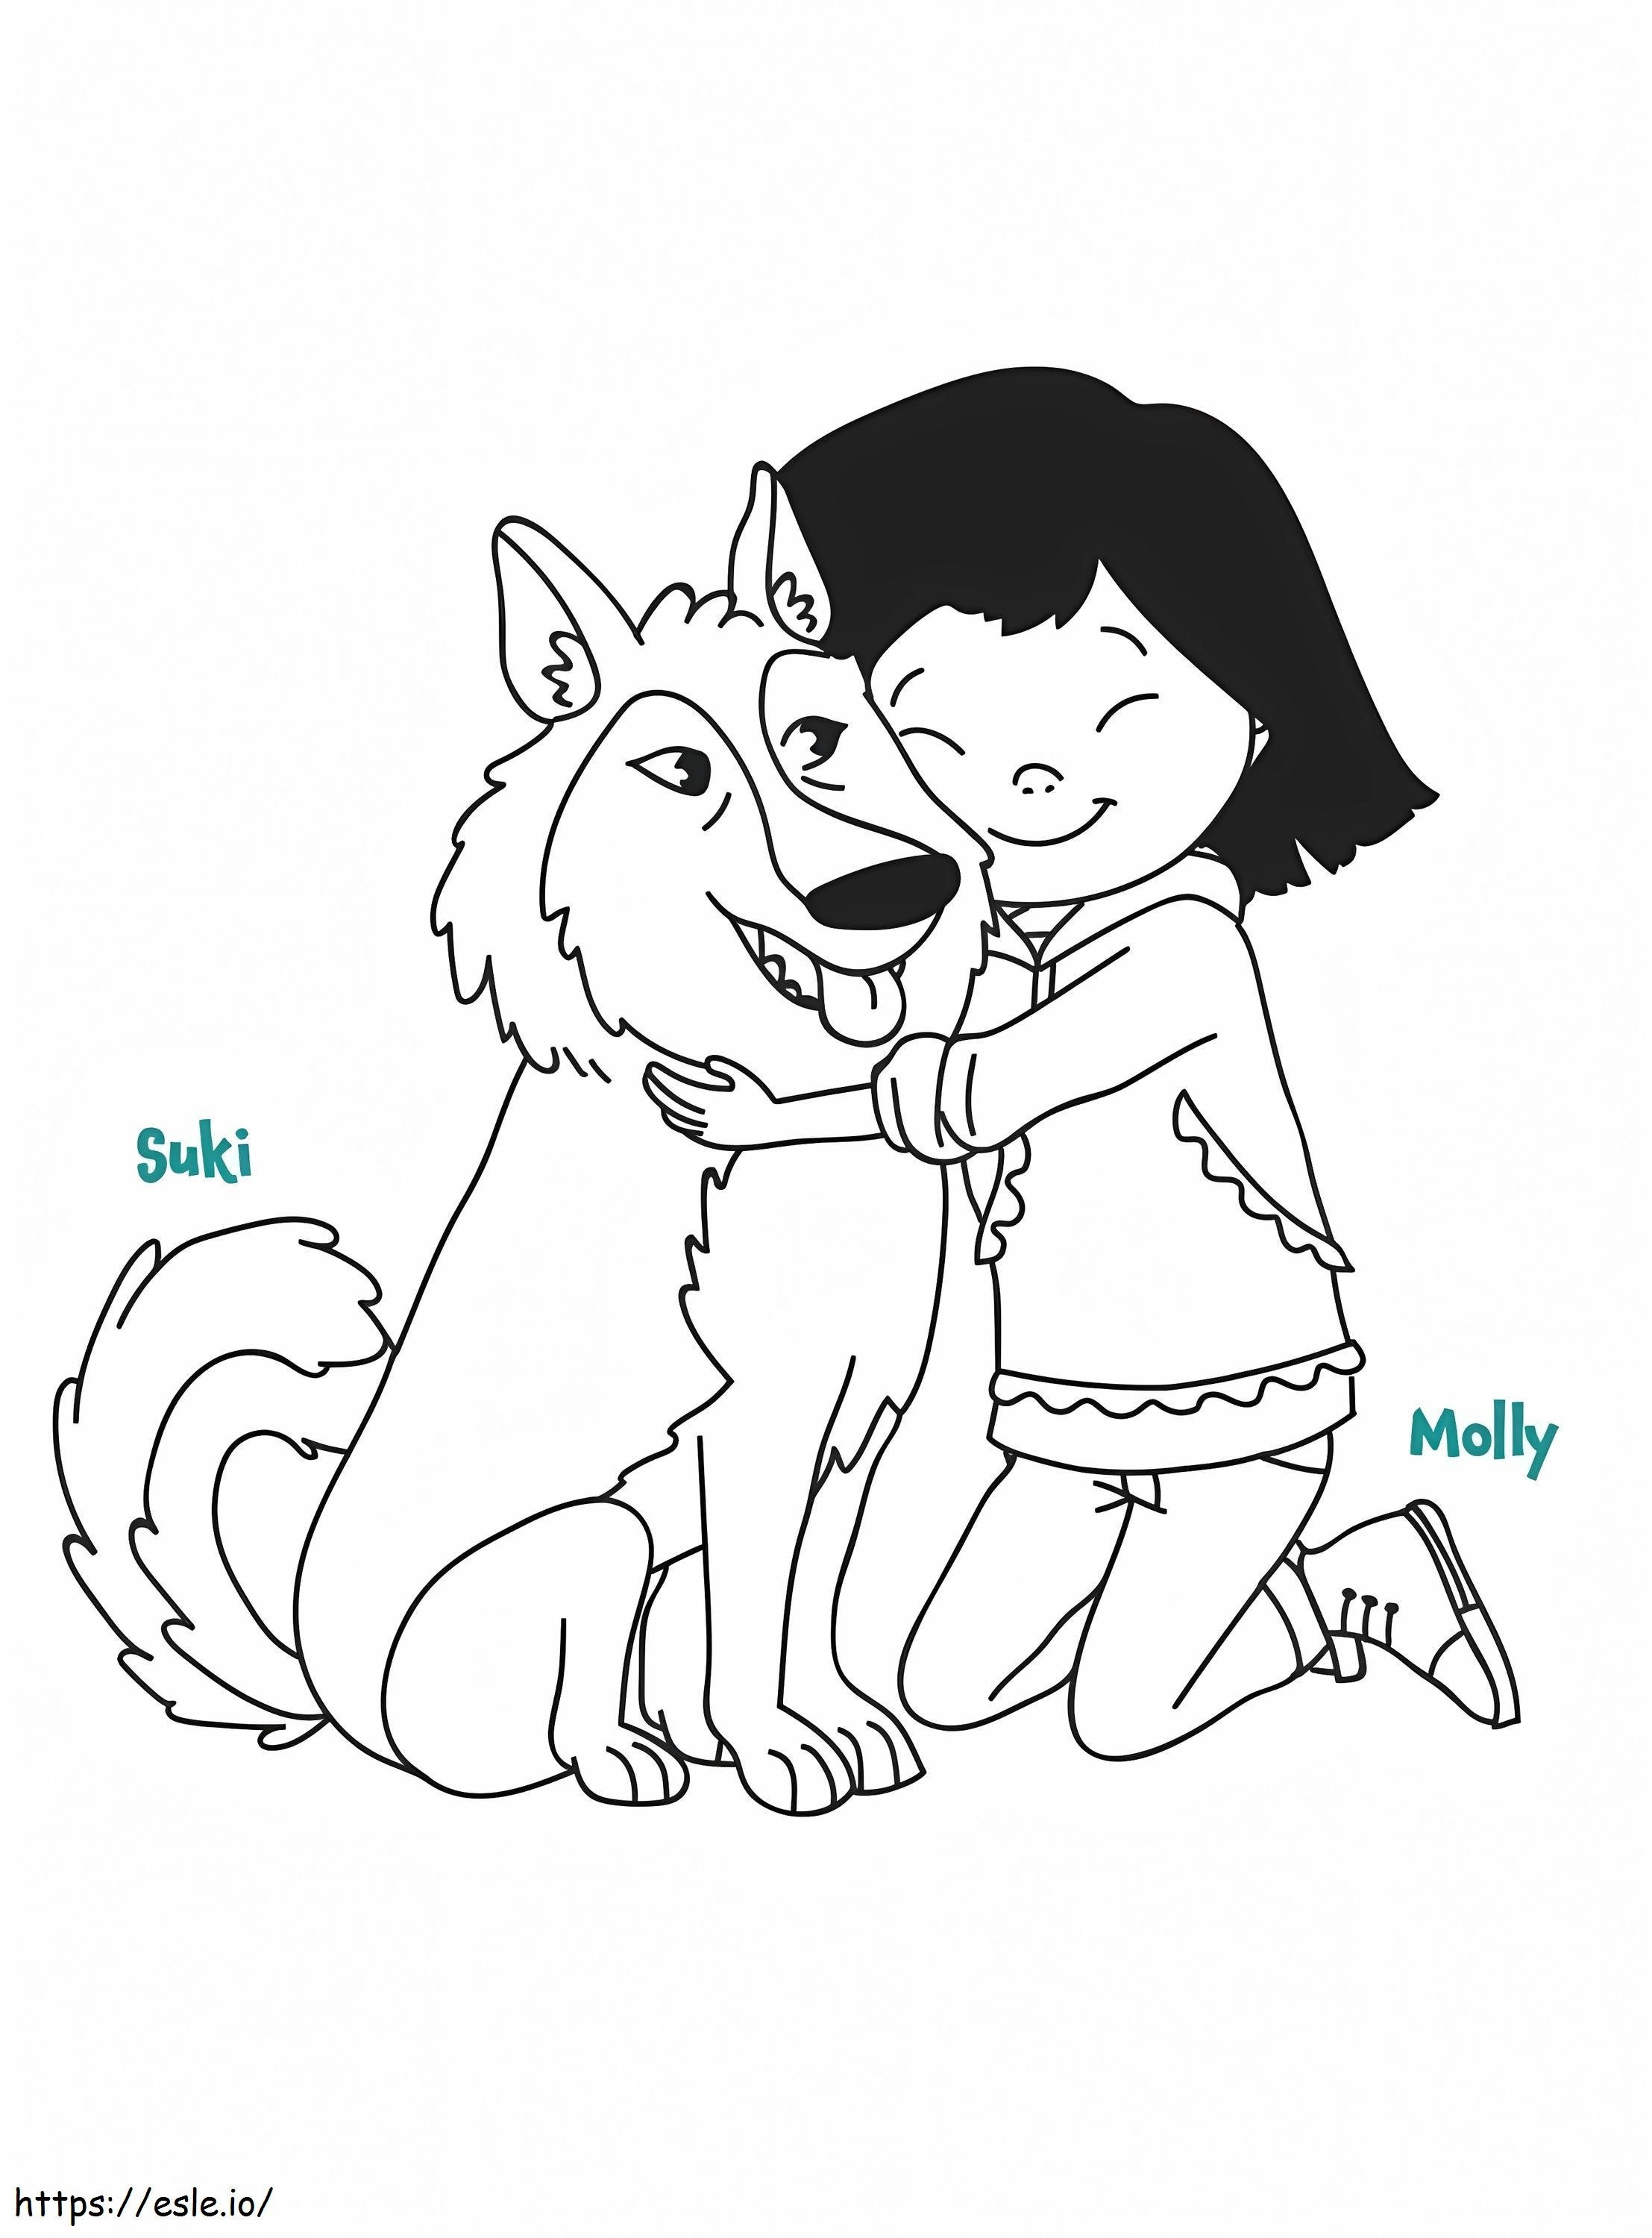 Molly e Suki de Molly de Denali para colorir